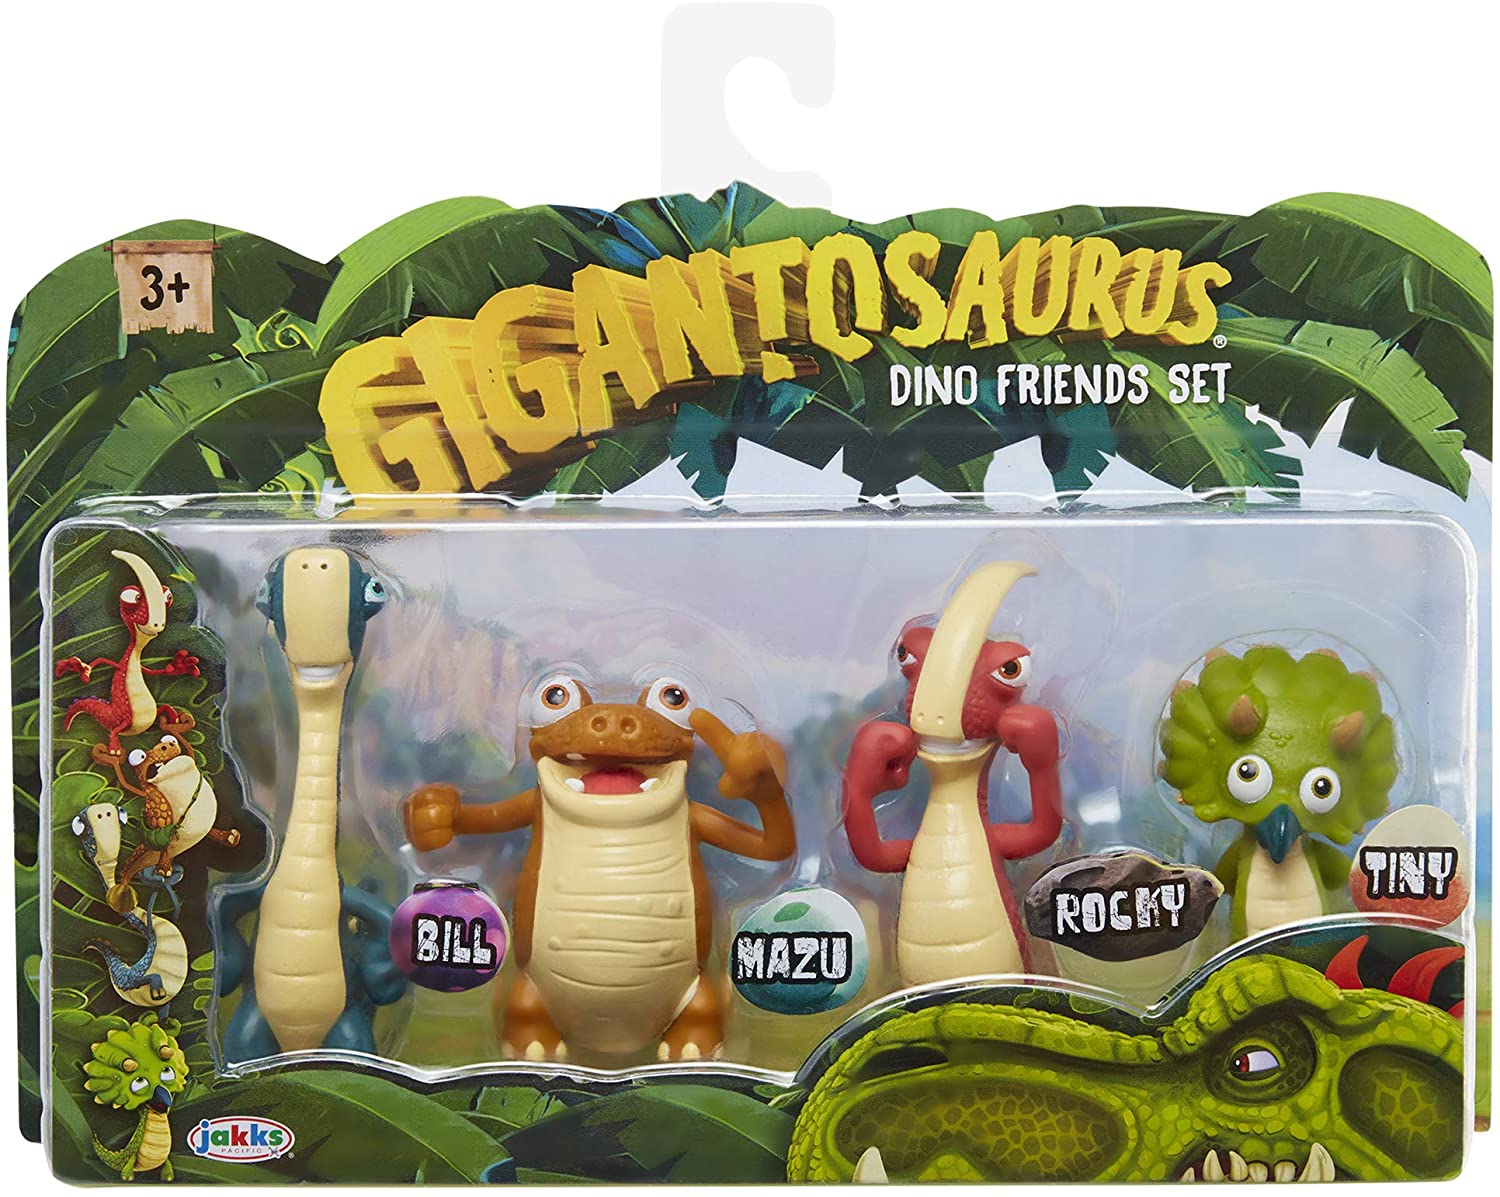 Gigantosaurus Dino Friends 4 Pack